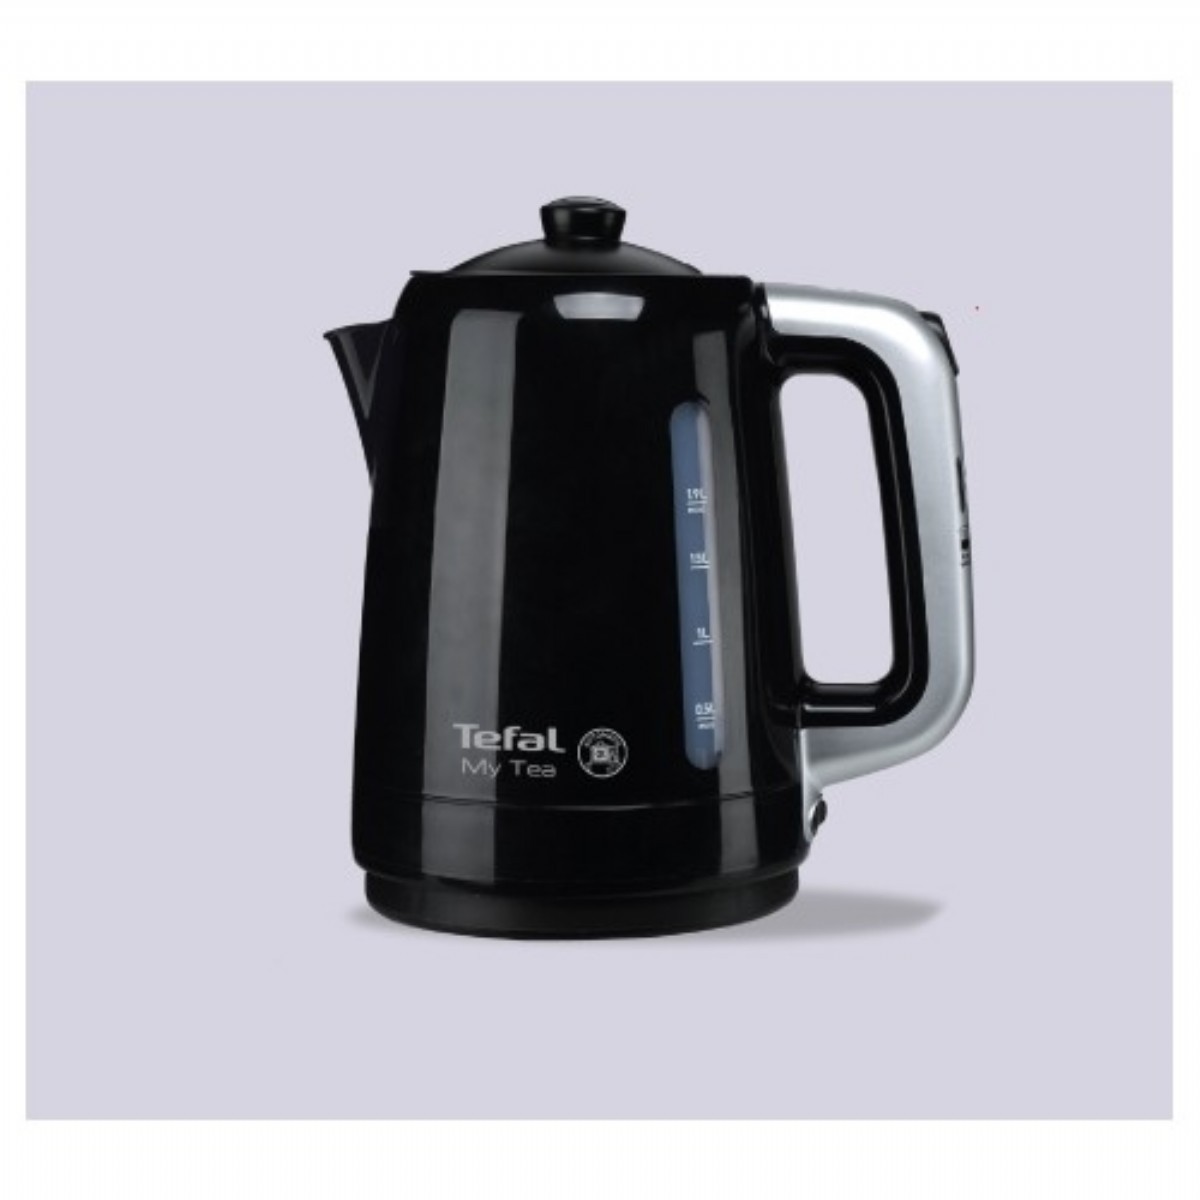 Çay Makineleri | Tefal My Tea Siyah 1500 W Cam Demlikli Çay Makinesi | BJ201S | Tefal My Tea Siyah 1500 W Cam Demlikli Çay Makinesi, tefal, çaycım,  çay makinesi, elektrikli çaydanlık, siyah çaycı,  | 